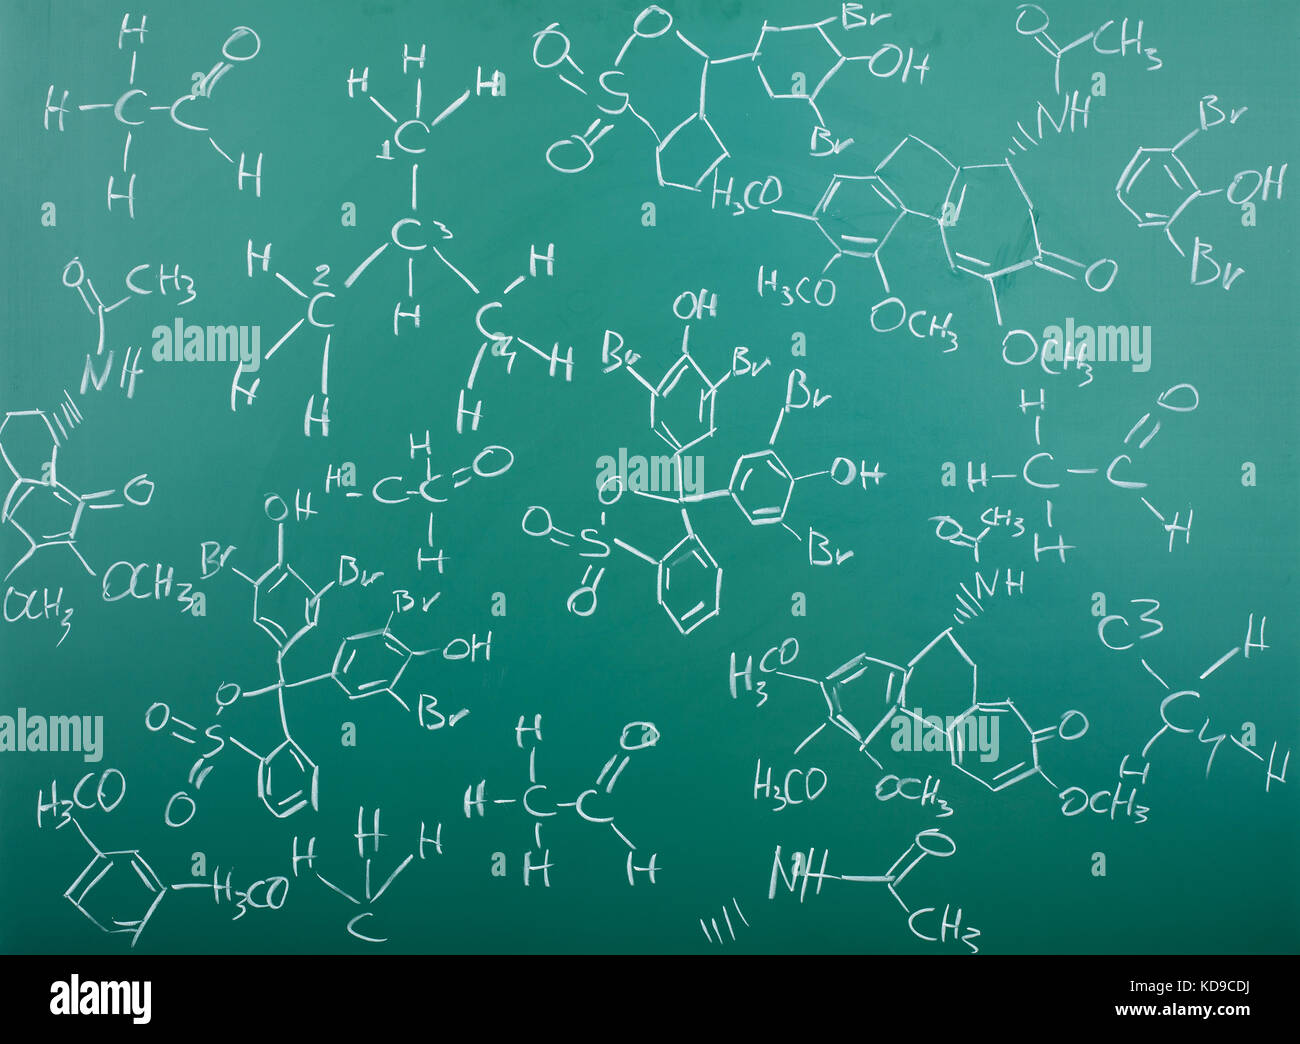 Organisch-chemische Formeln auf einer grünen Tafel Stockfoto